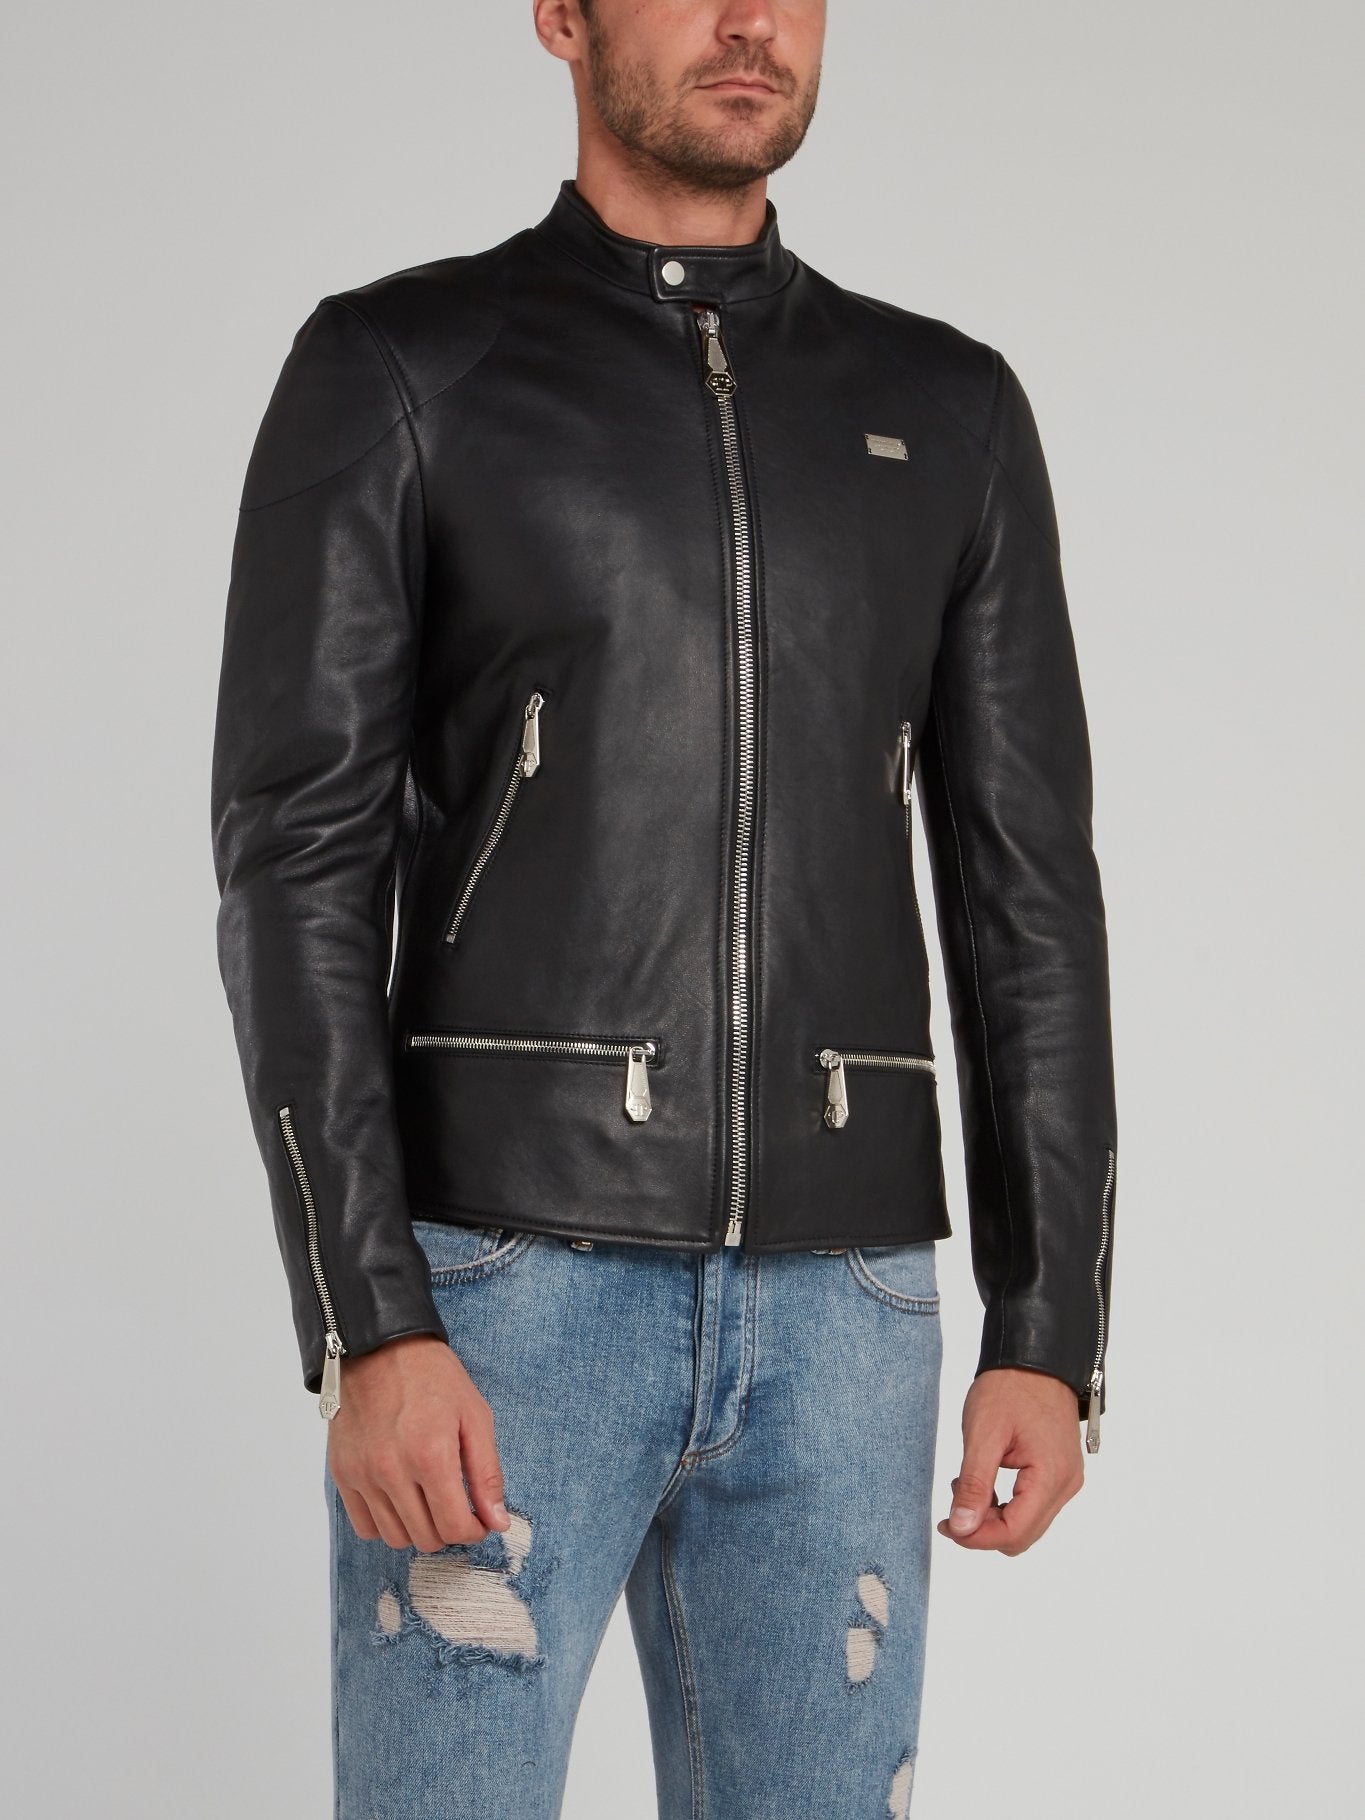 Black Clasp Neck Leather Moto Jacket